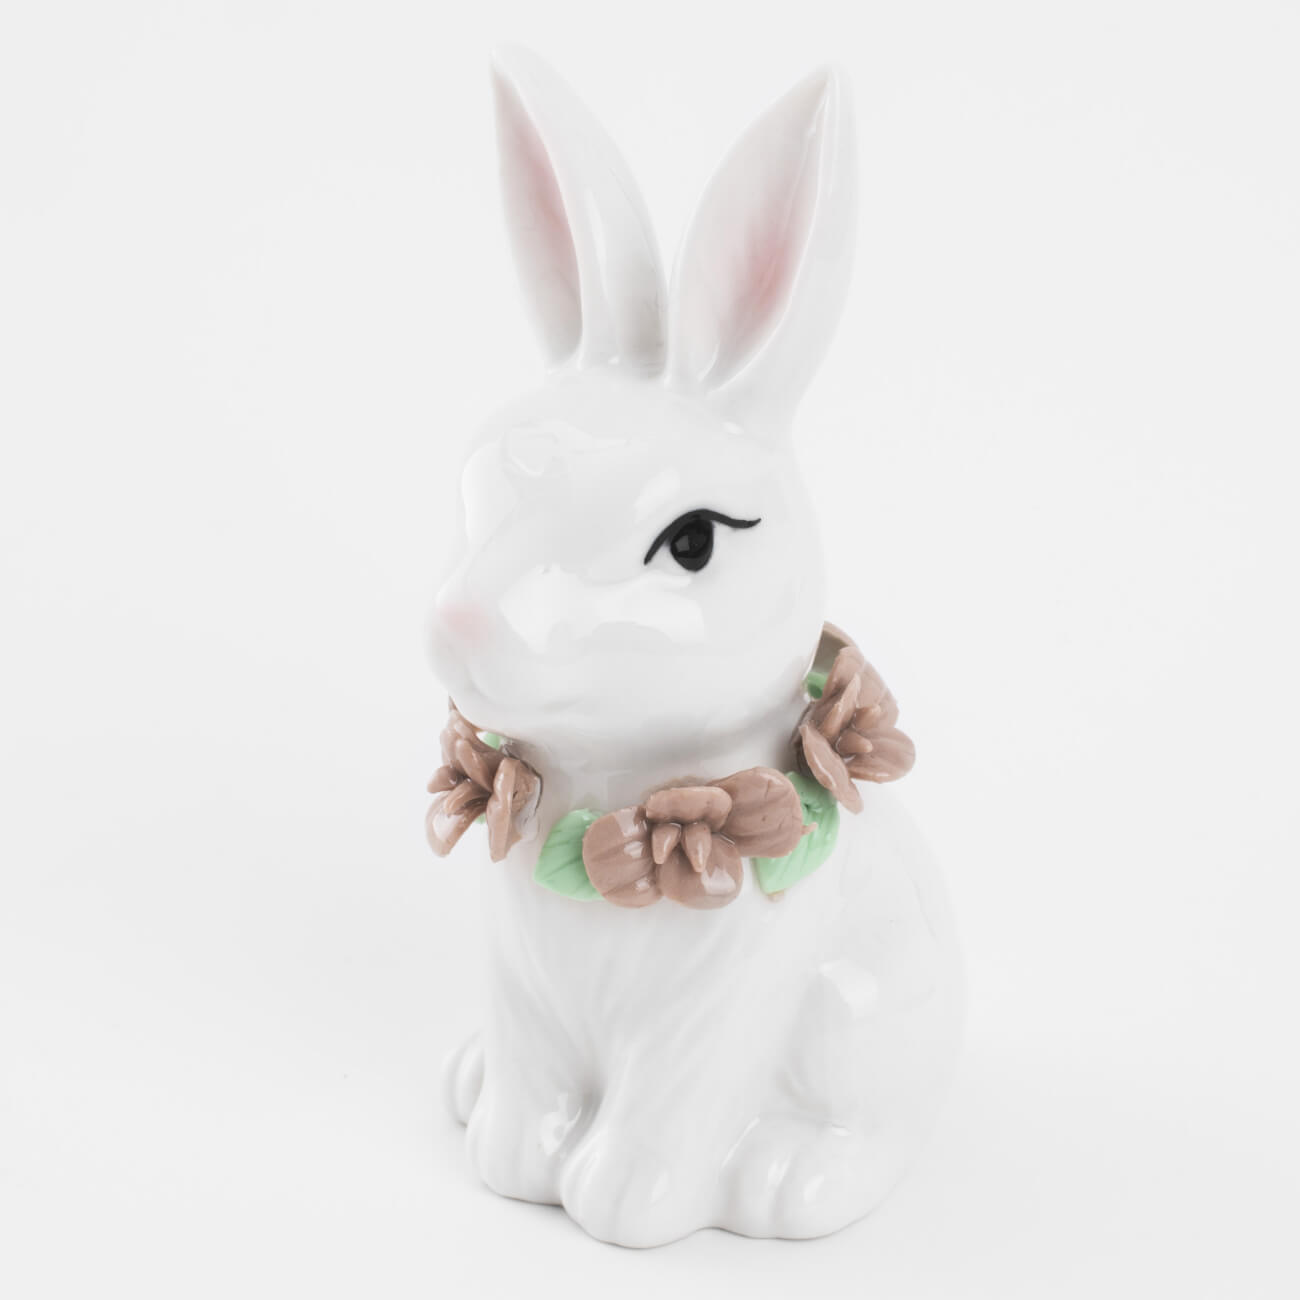 статуэтка 15 см фарфор porcelain белая кролик в ах pure easter Статуэтка, 12 см, фарфор P, белая, Кролик в цветах, Easter blooming